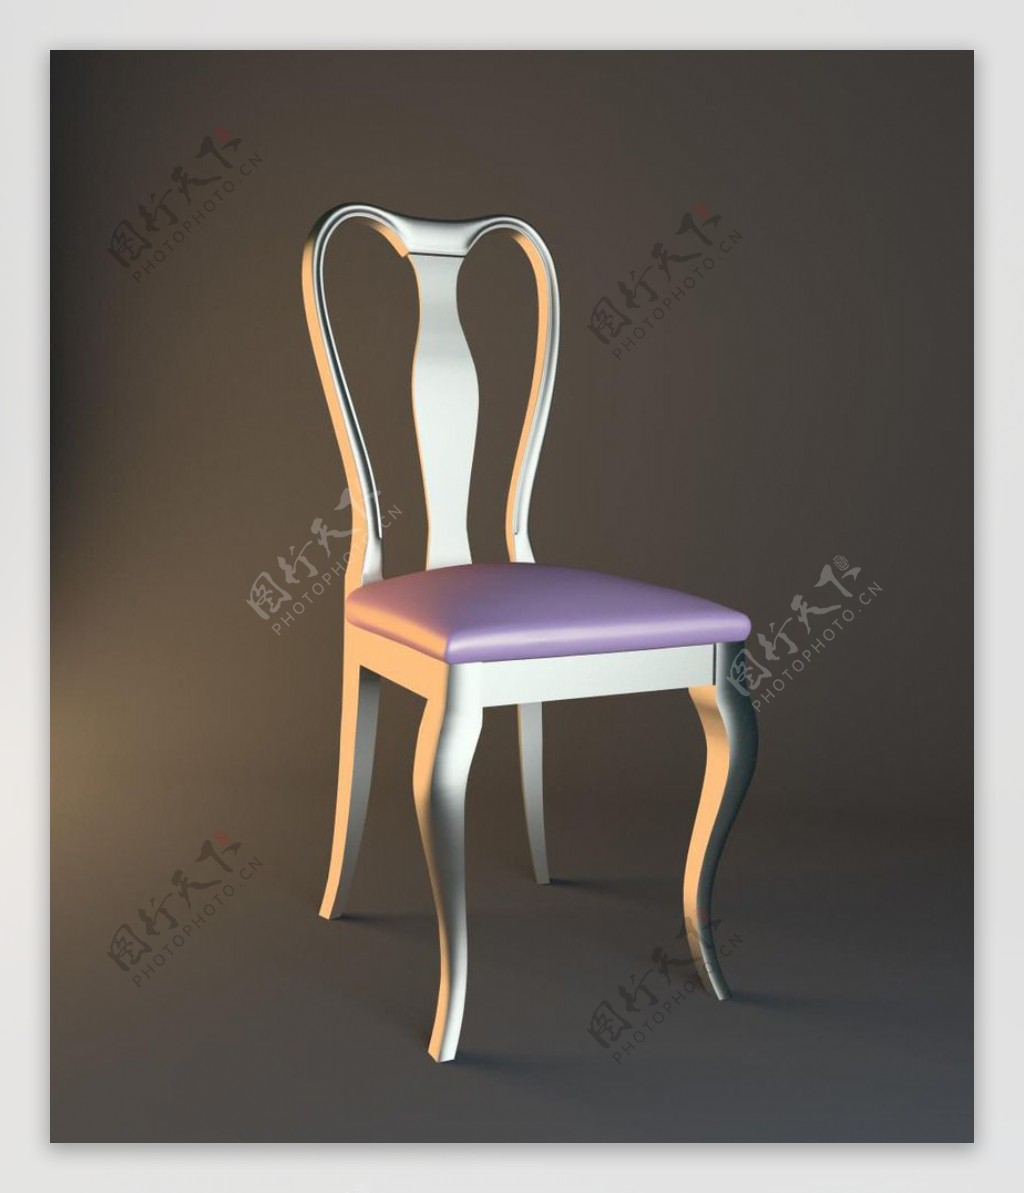 椅子粉红银色欧式